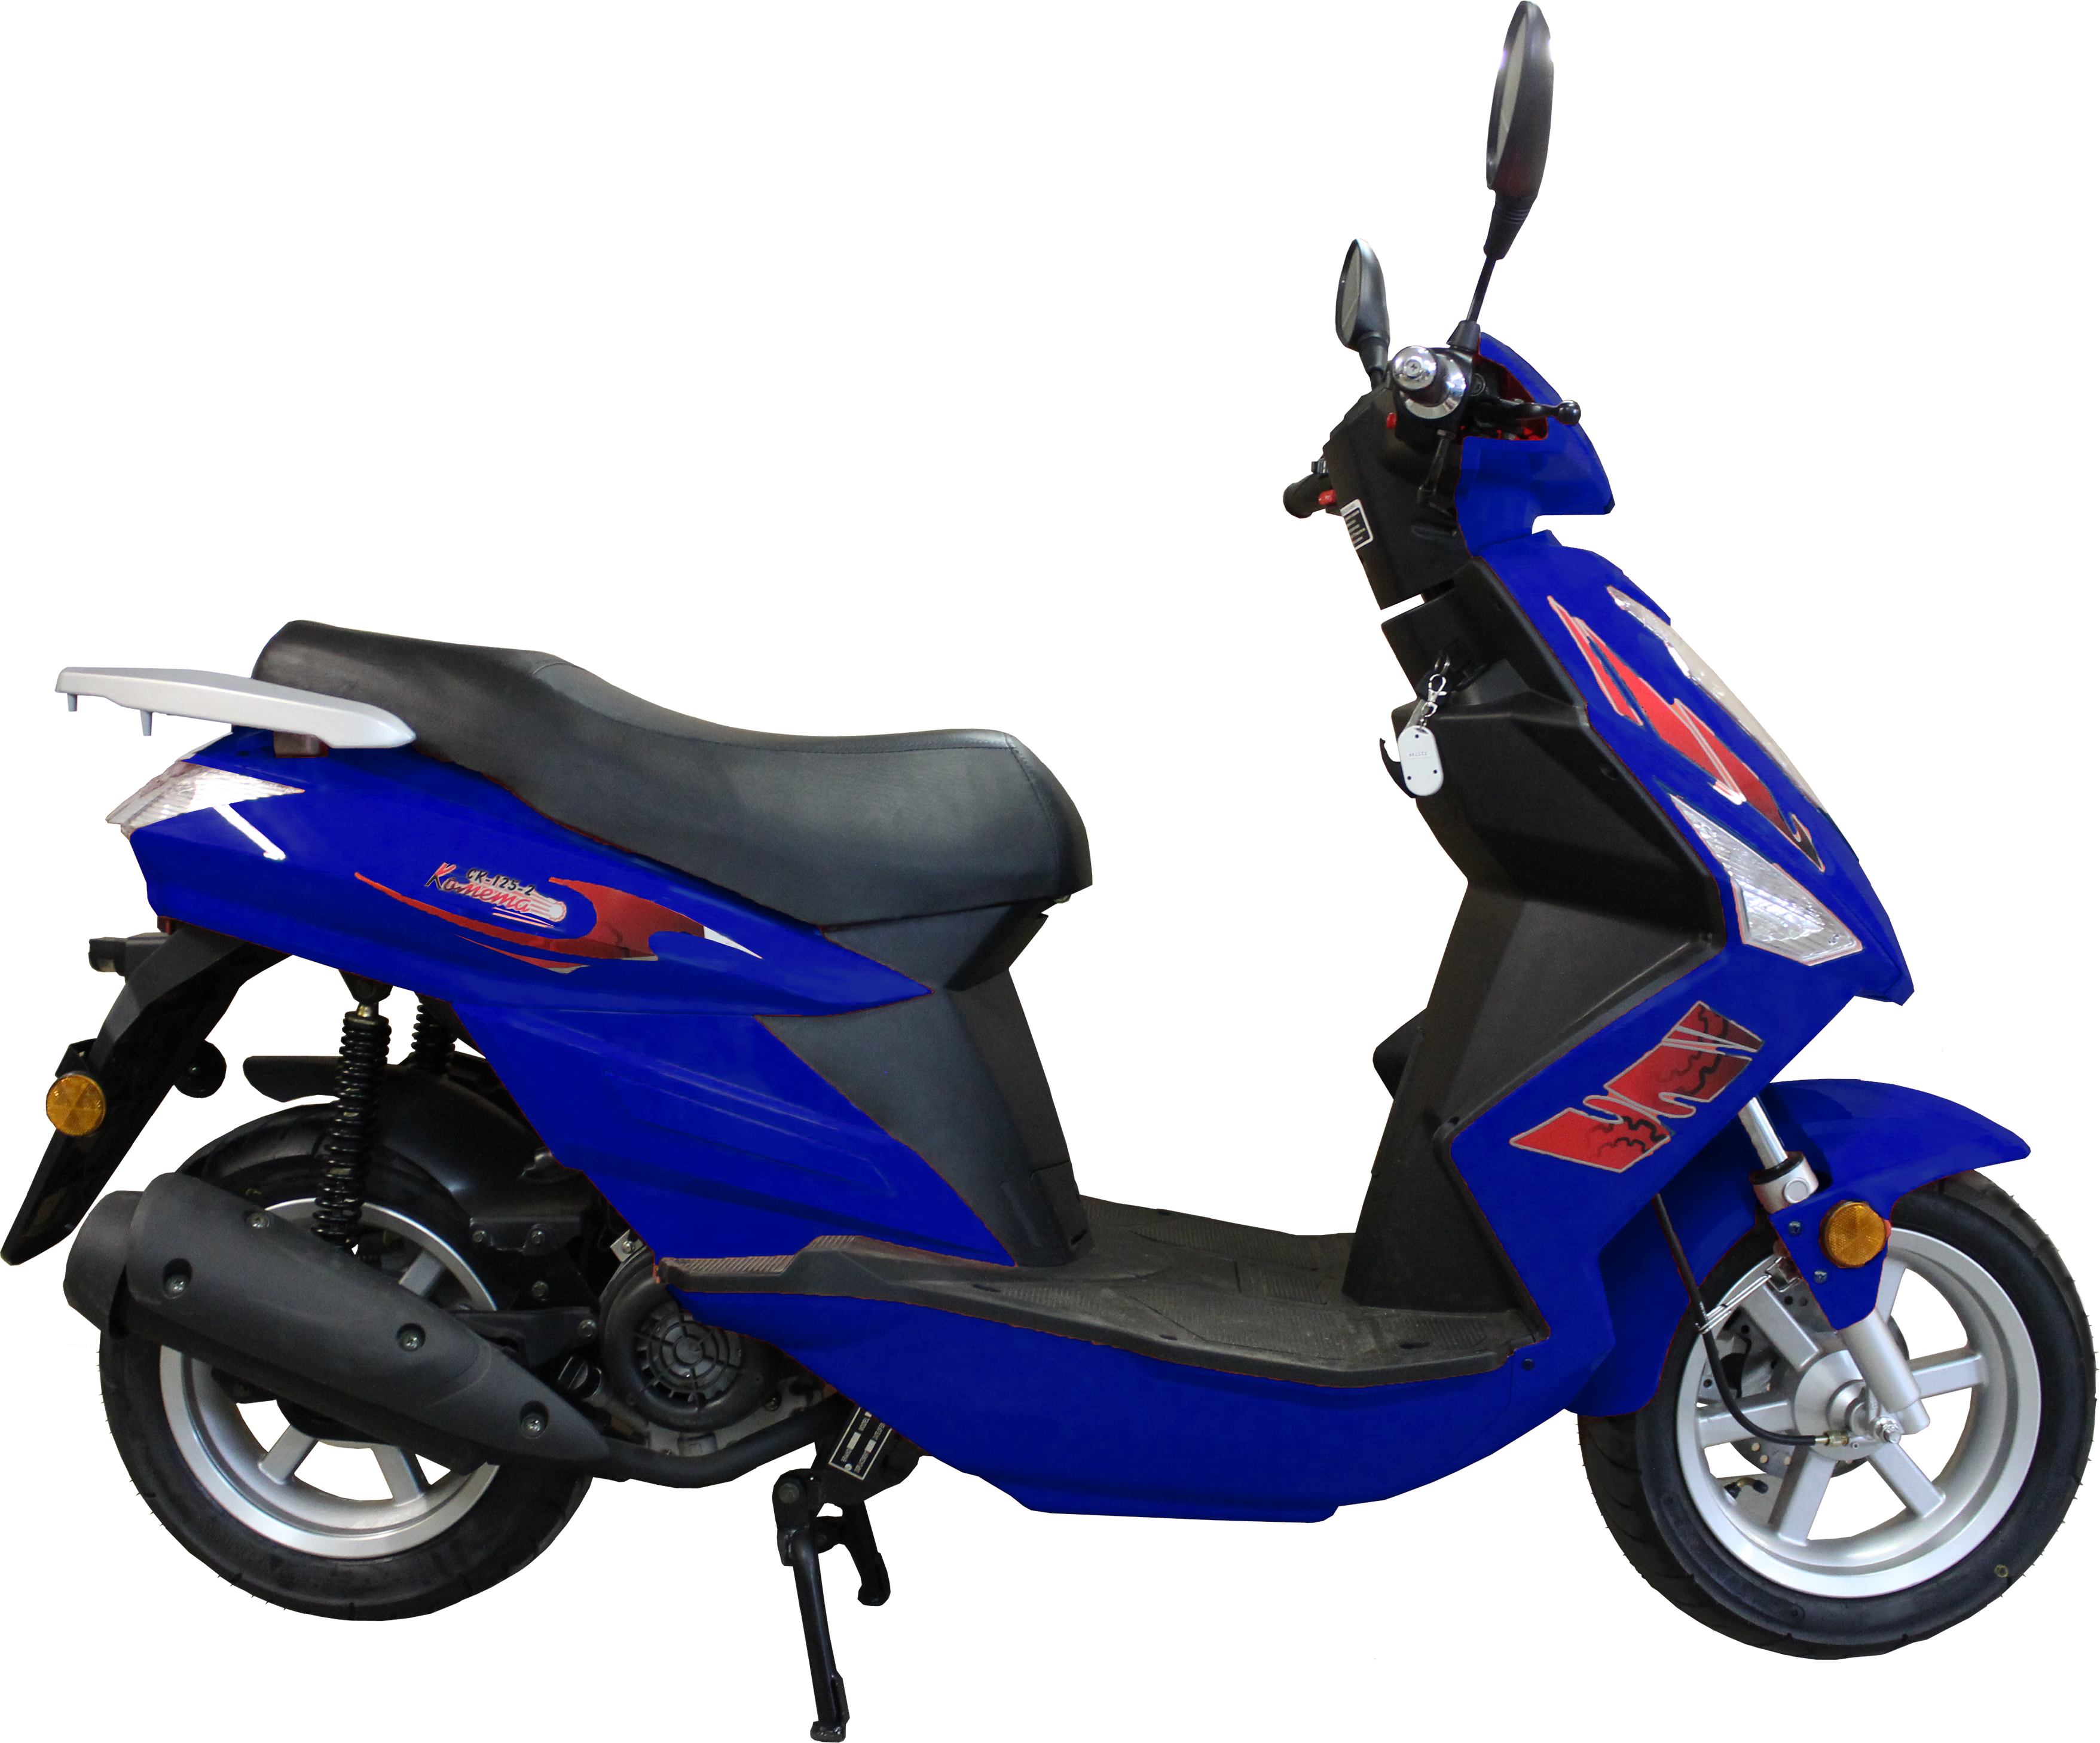 Dark Blue Tvs Scooty Motorcycle